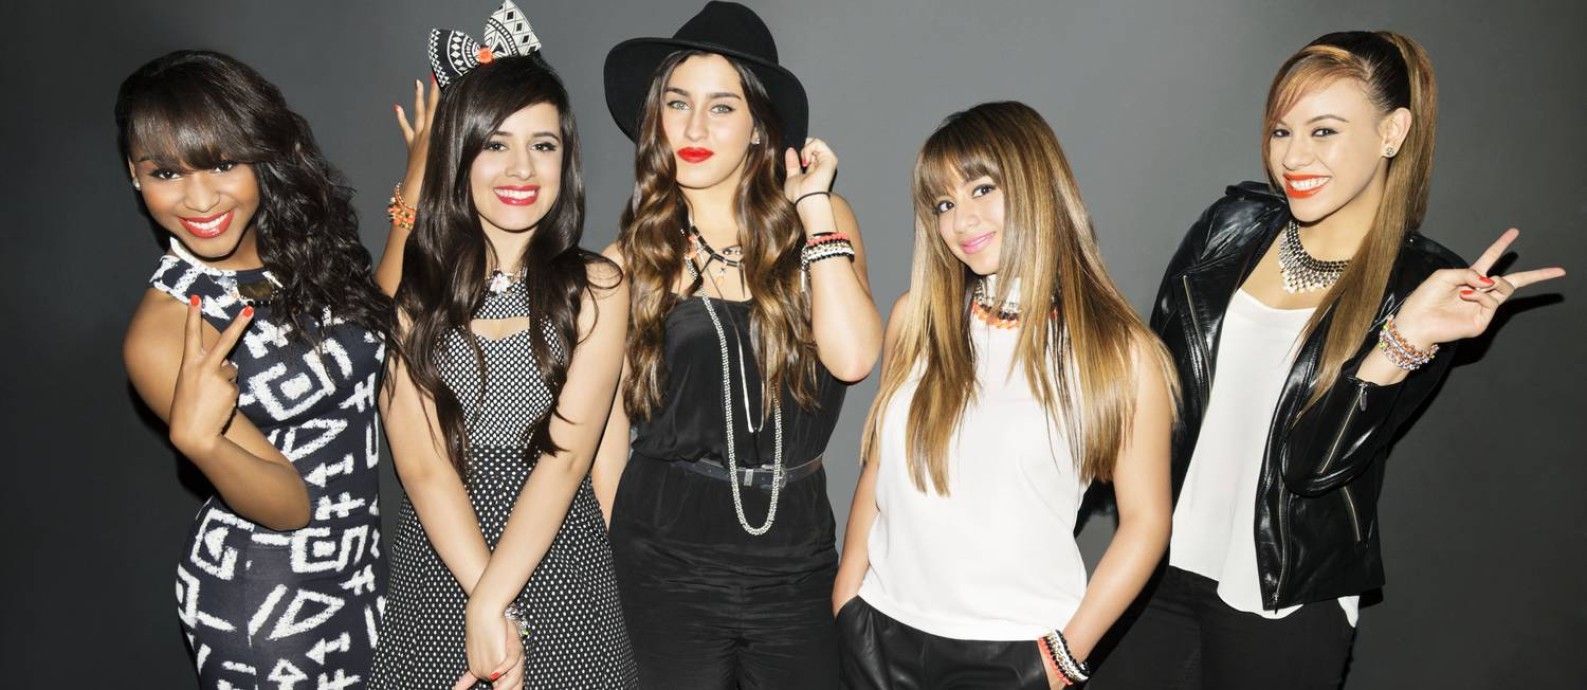 O grupo vocal Fifth Harmony Foto: Divulgação